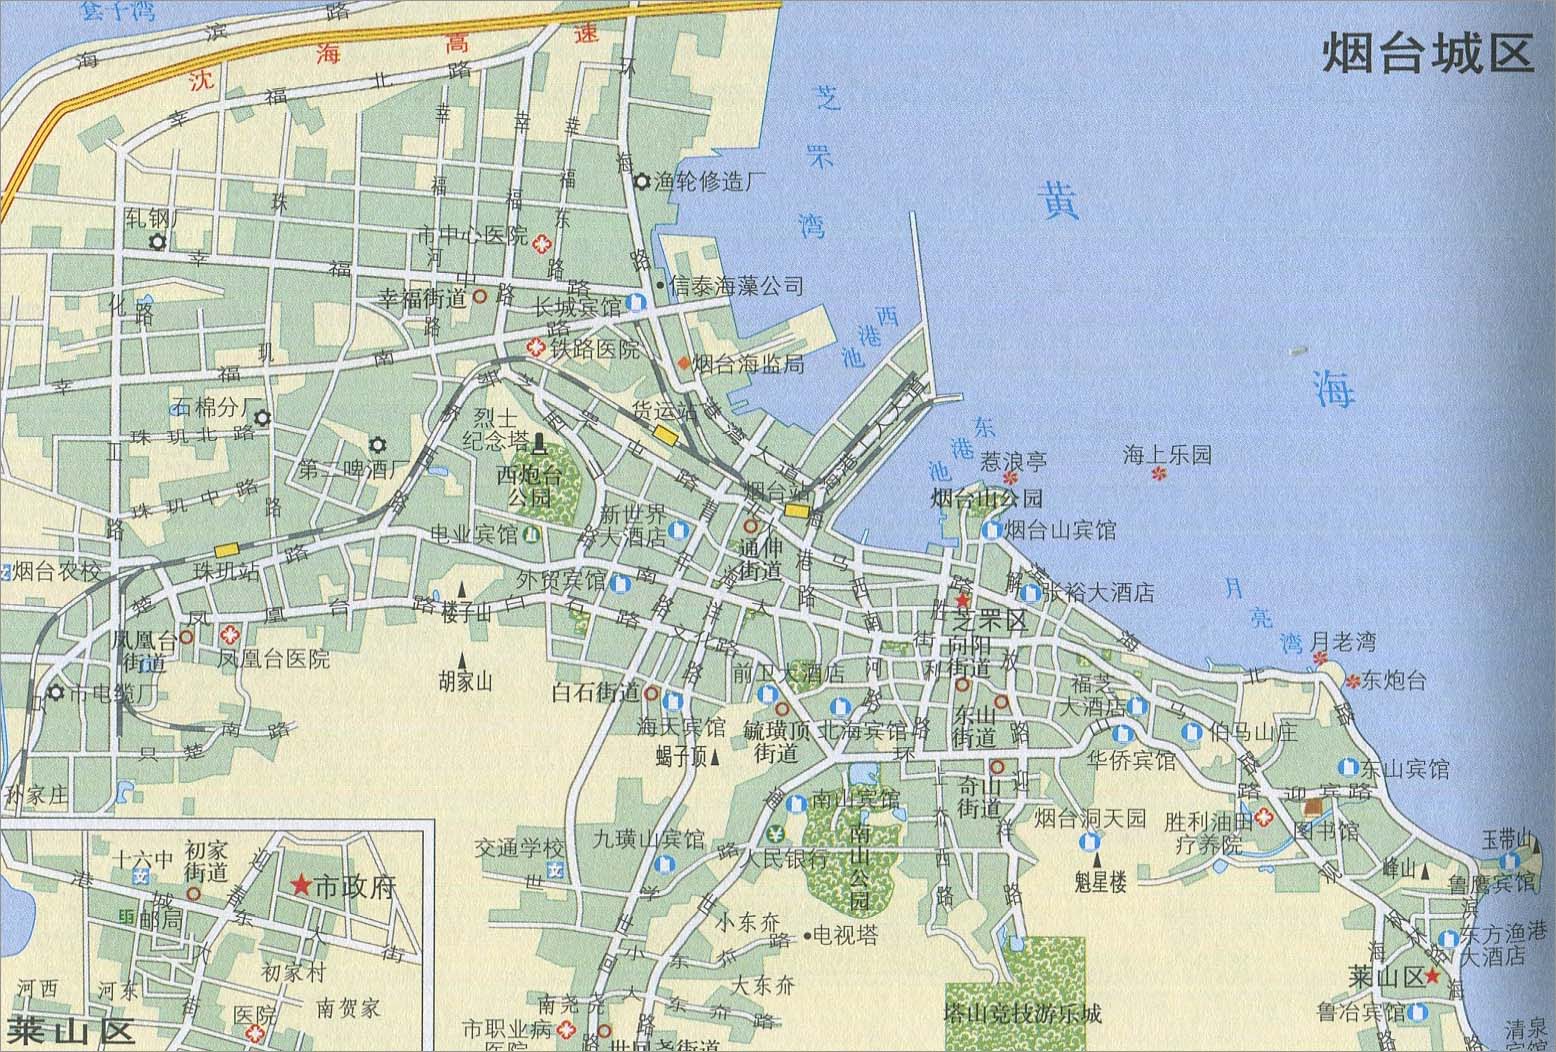 中国地图 山东 烟台市 >> 烟台城区地图  相关链接: 济南市  青岛市